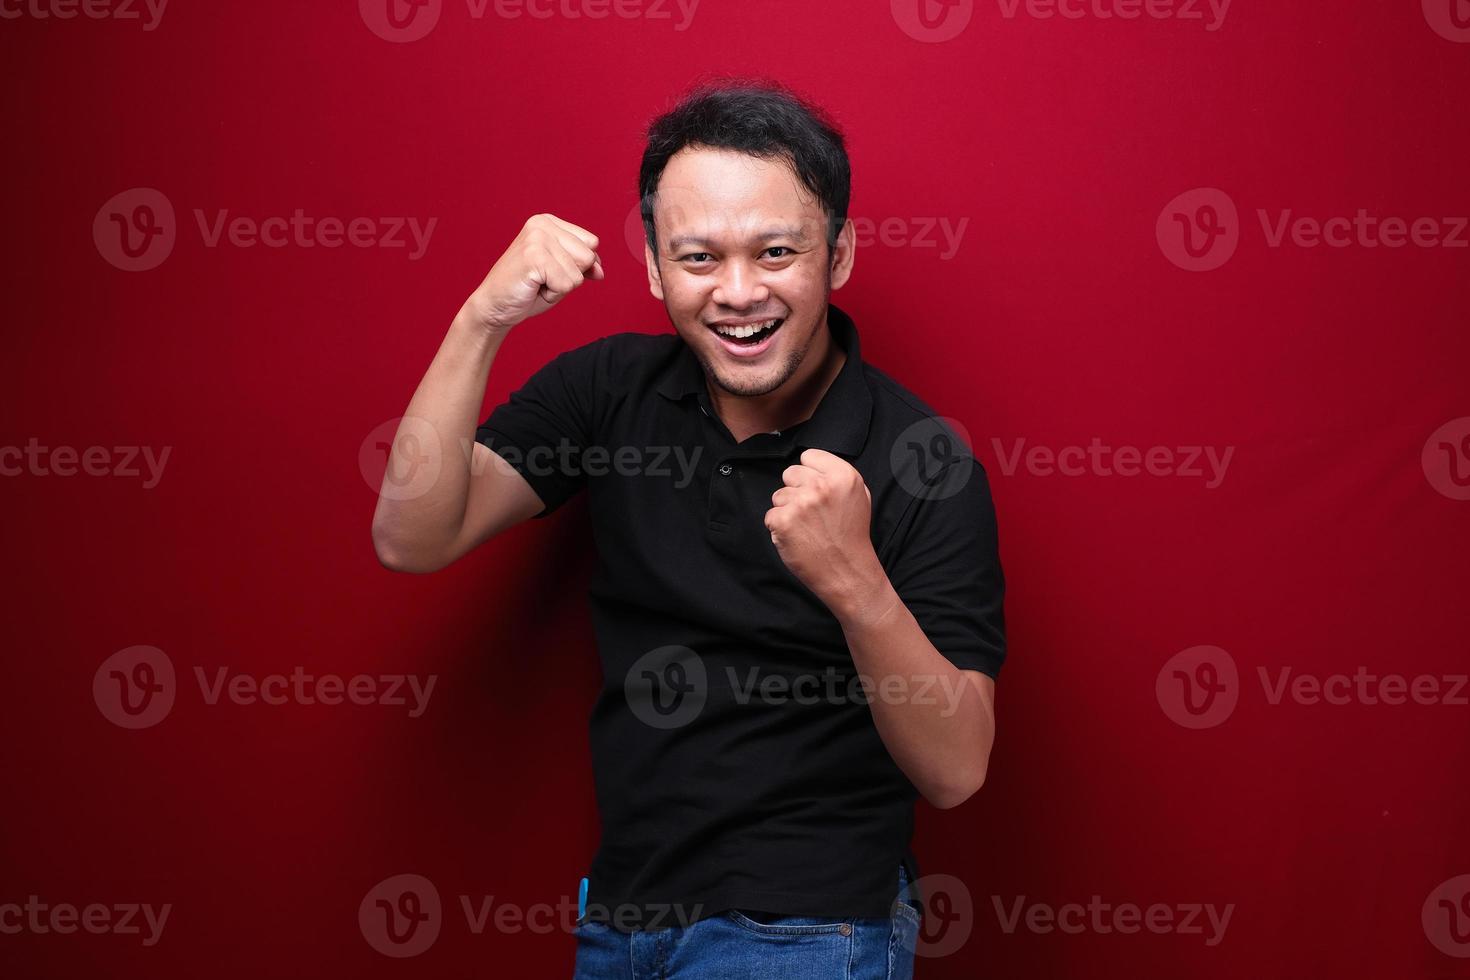 feliz, emocionado y sonriente joven asiático levantando el brazo para celebrar el éxito o el logro. foto